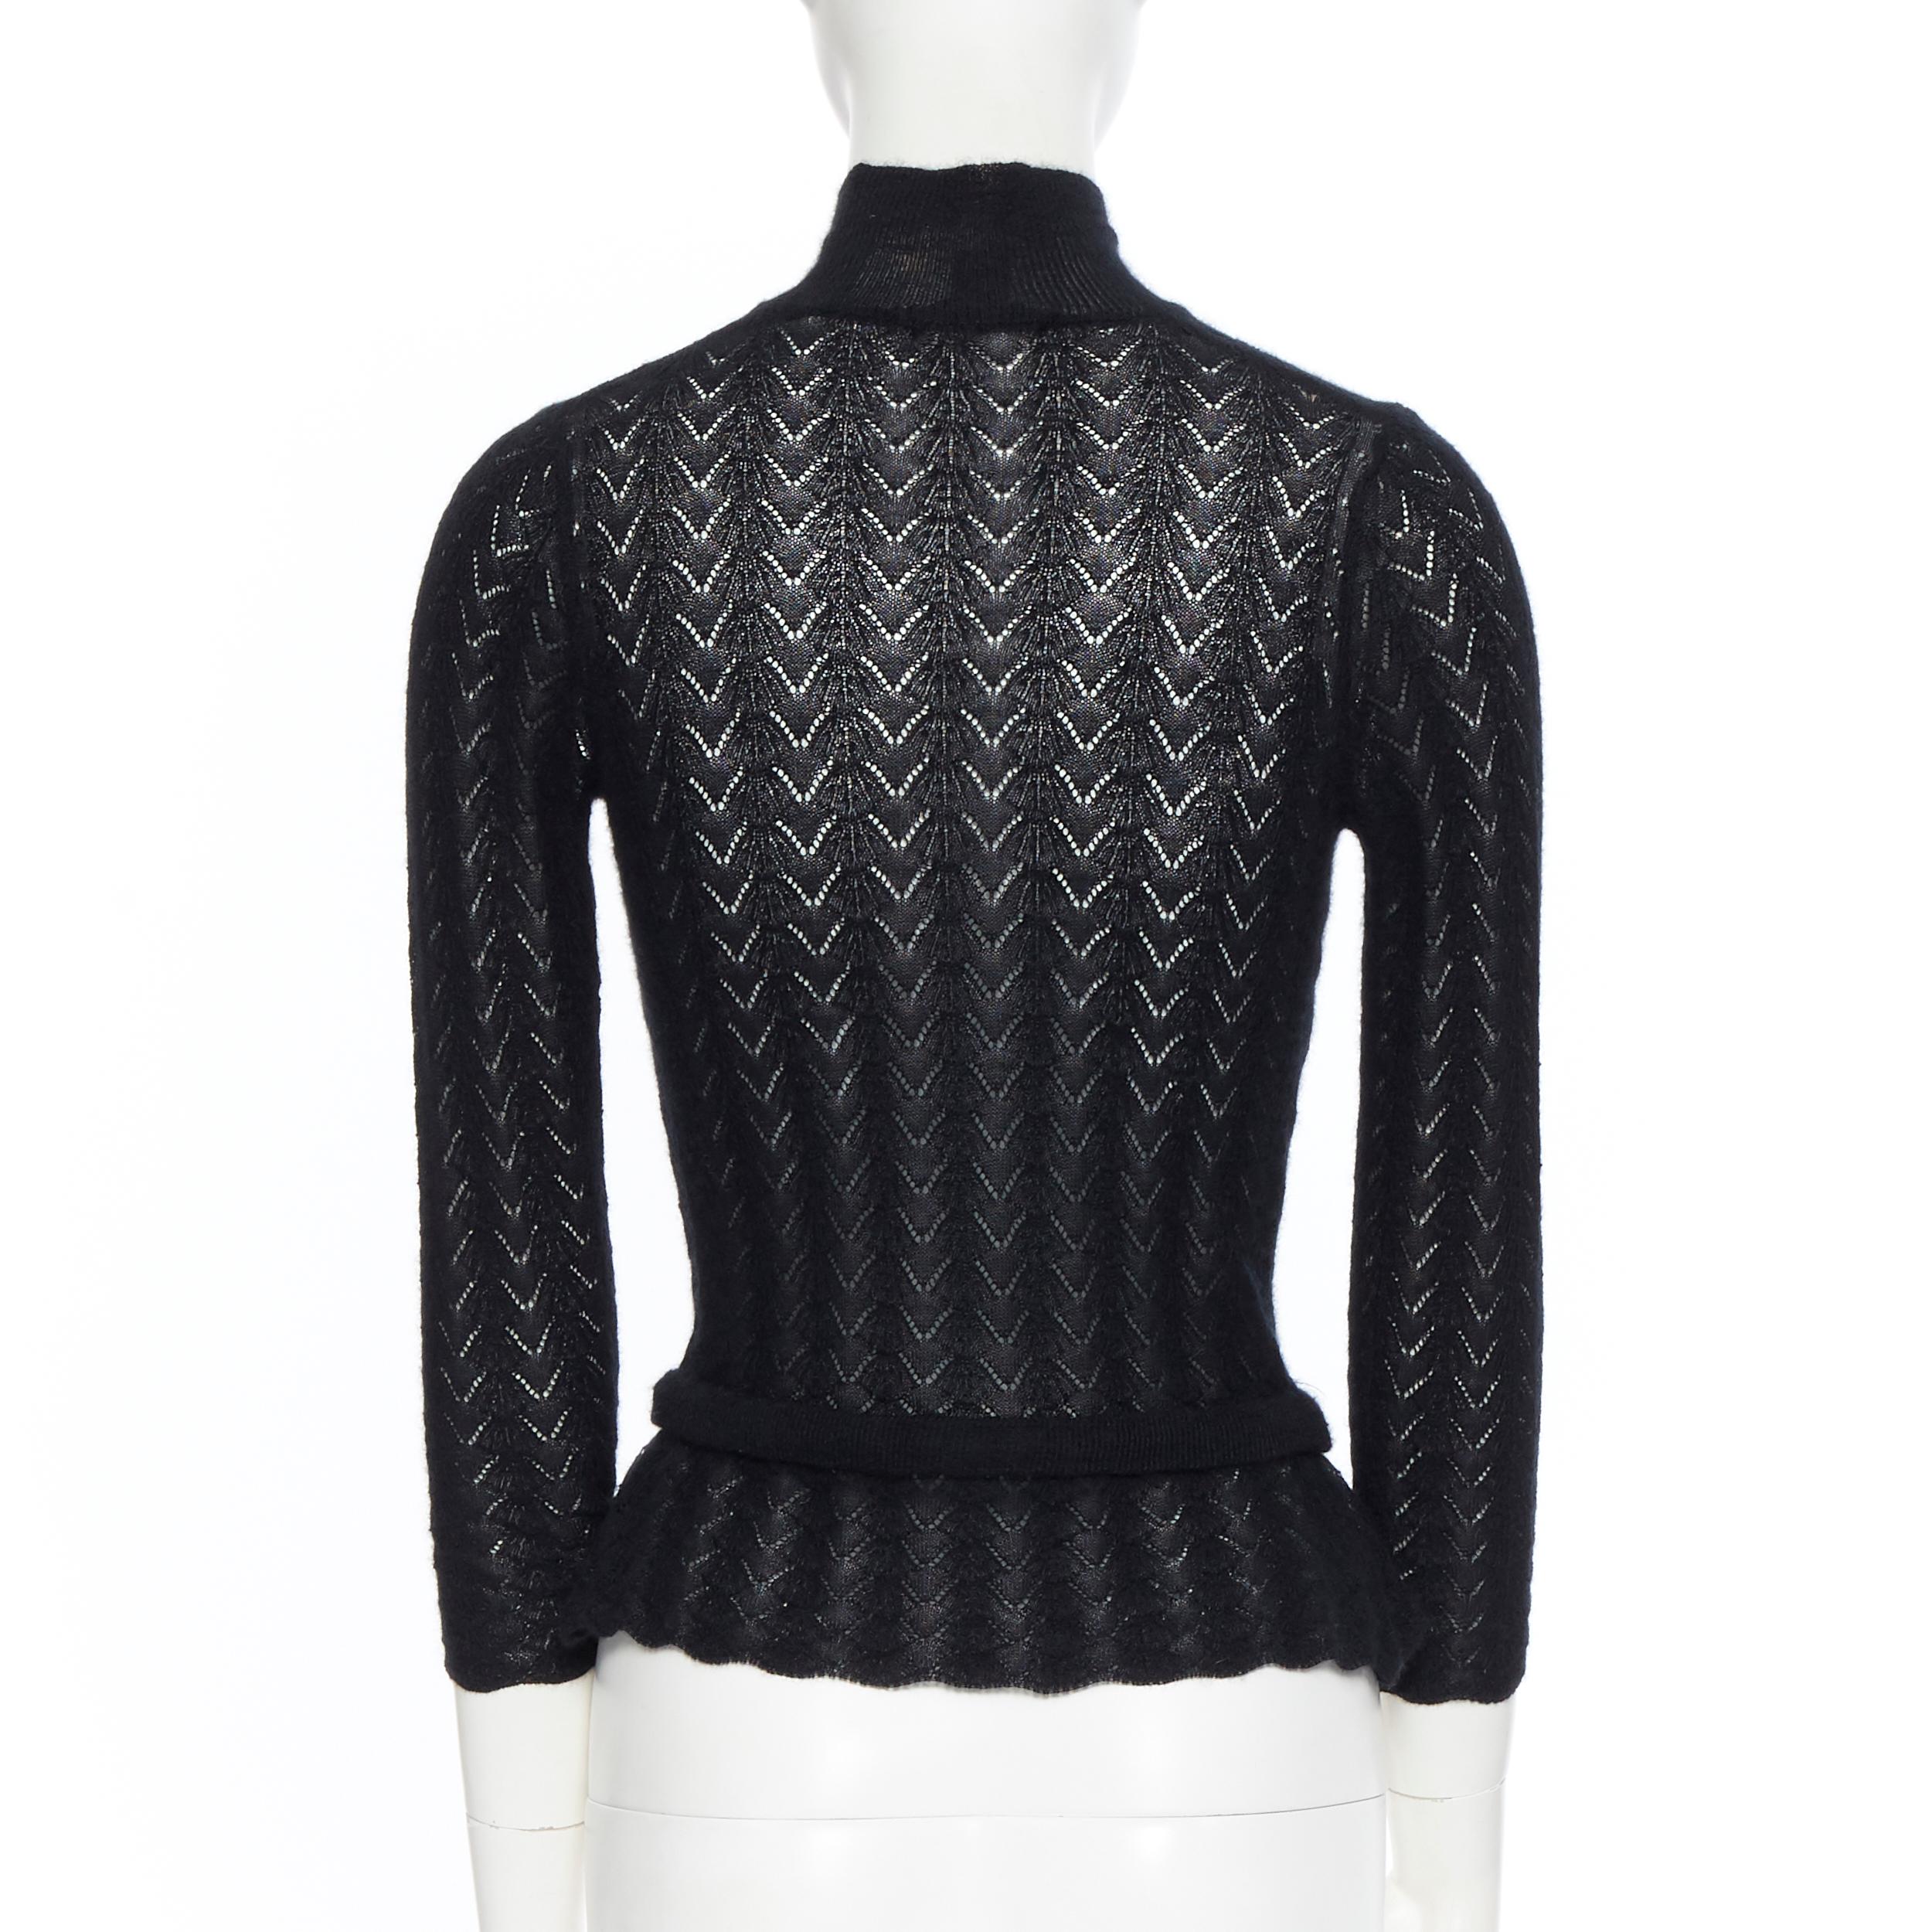 Black LOUIS VUITTON 100% cashmere black lace loose knit  turtleneck sweater top M